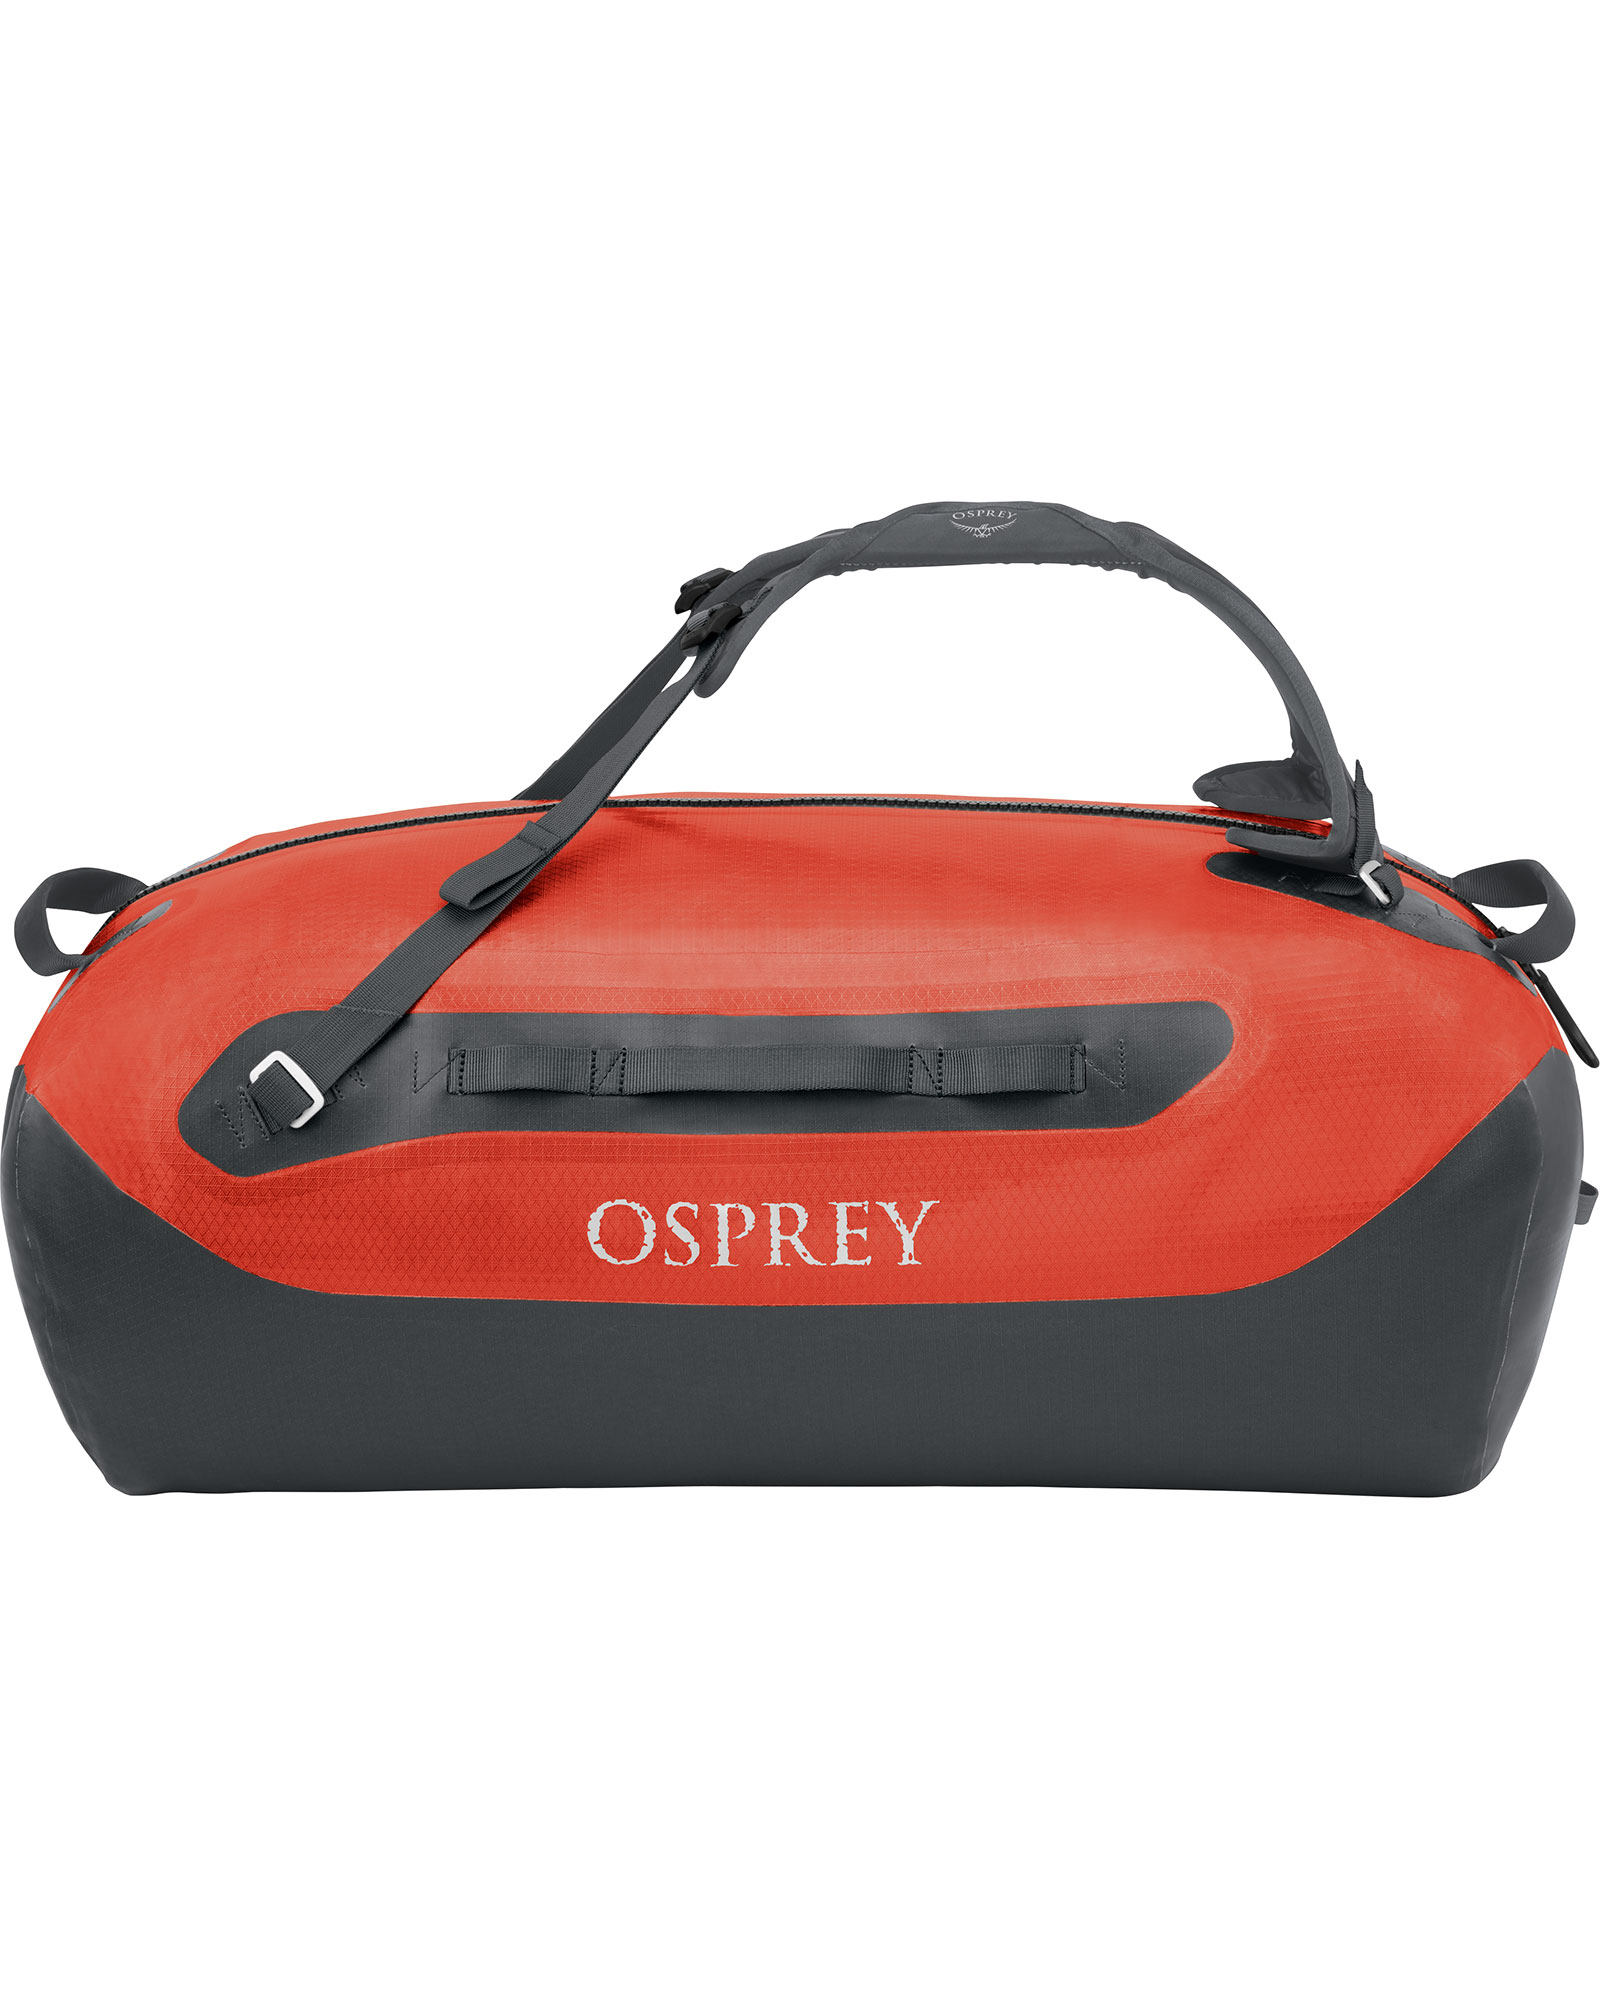 Osprey Transporter 70 Waterproof Duffel 0